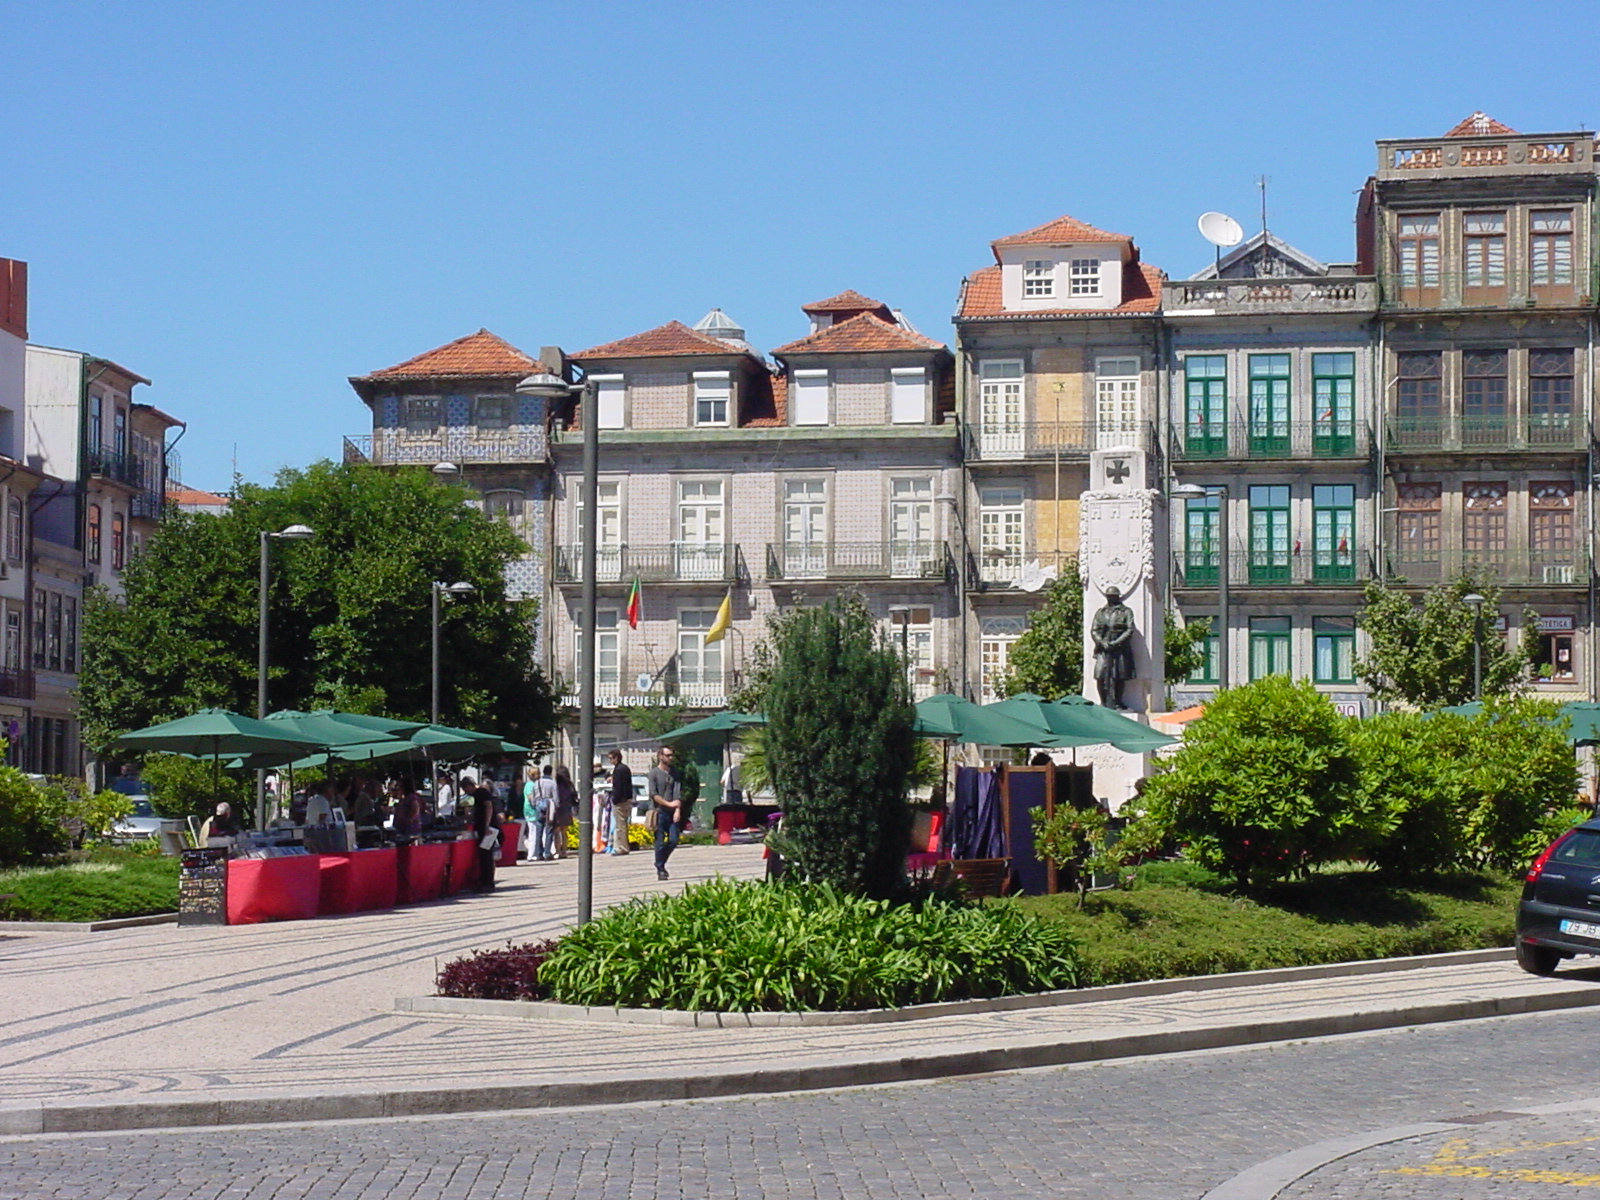 Porto Belo Market - Fairs and Markets